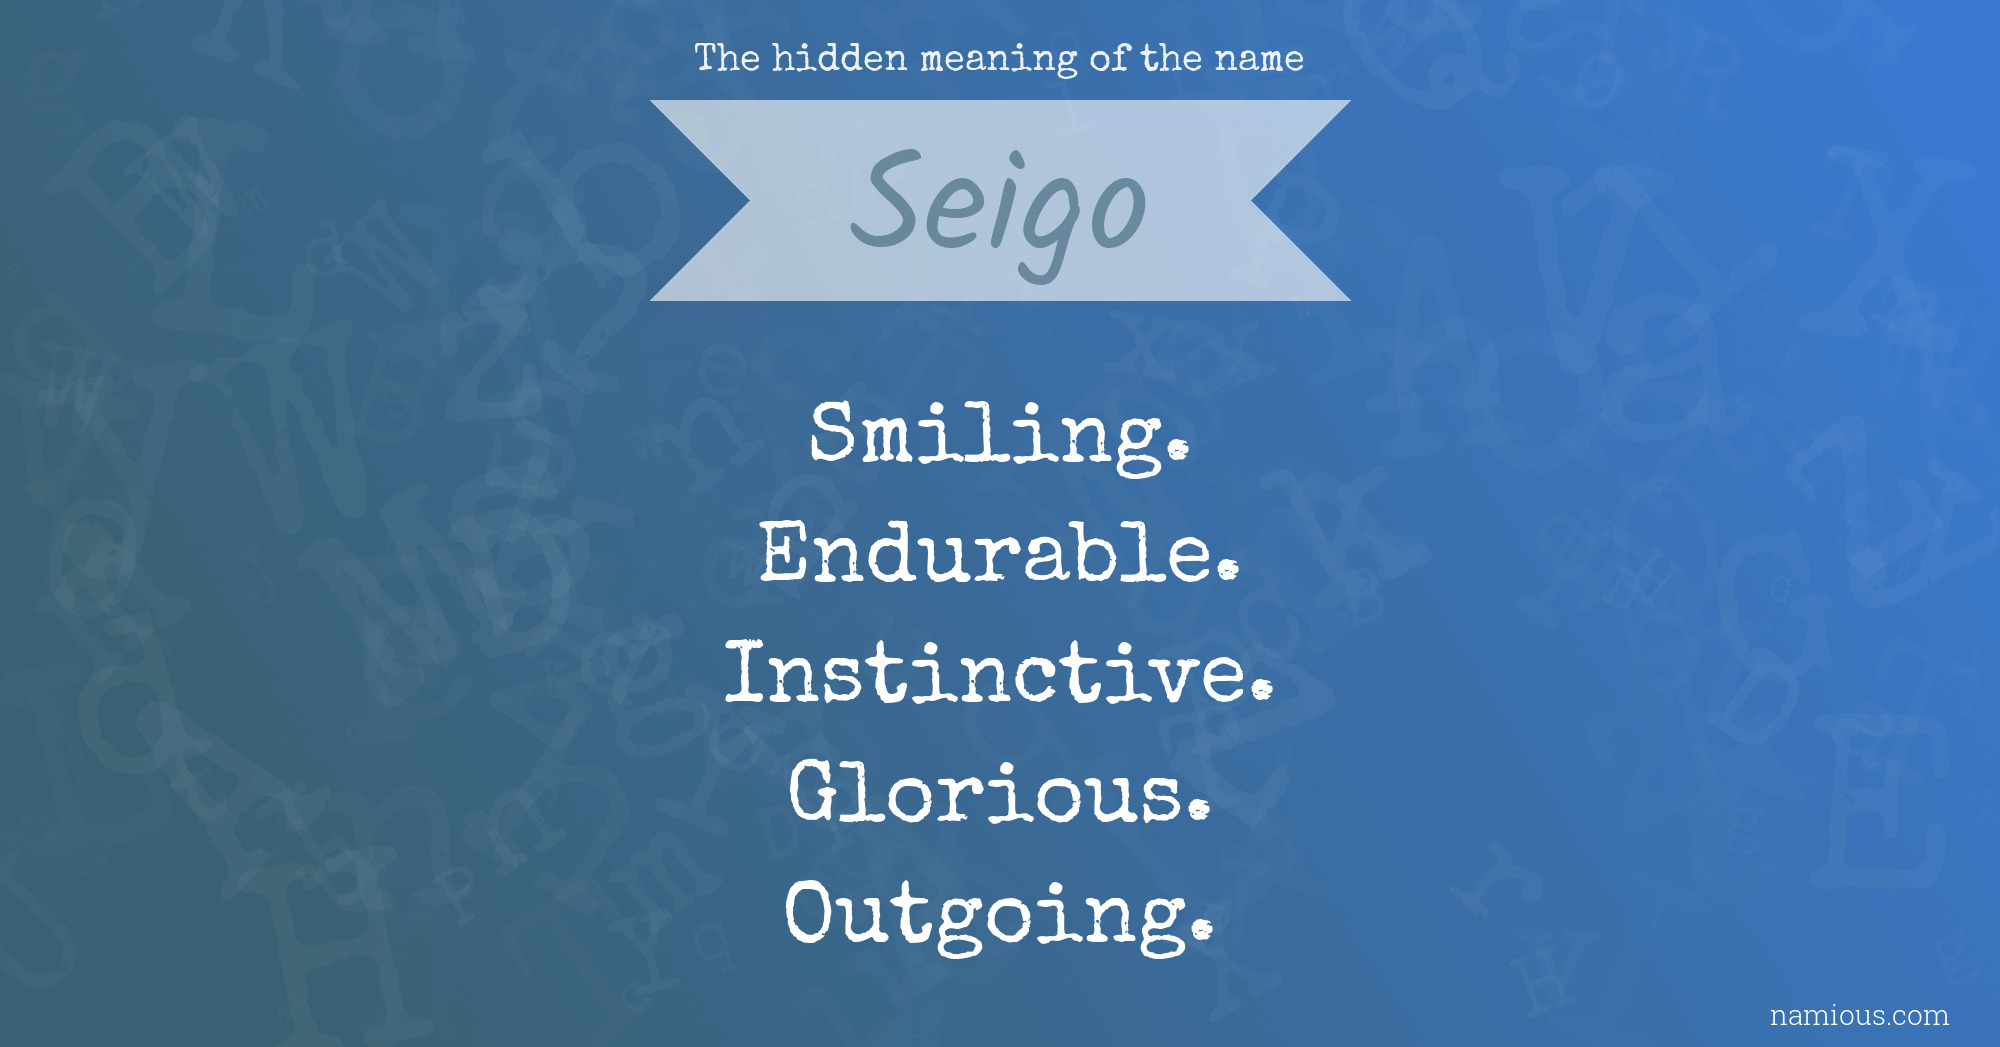 The hidden meaning of the name Seigo